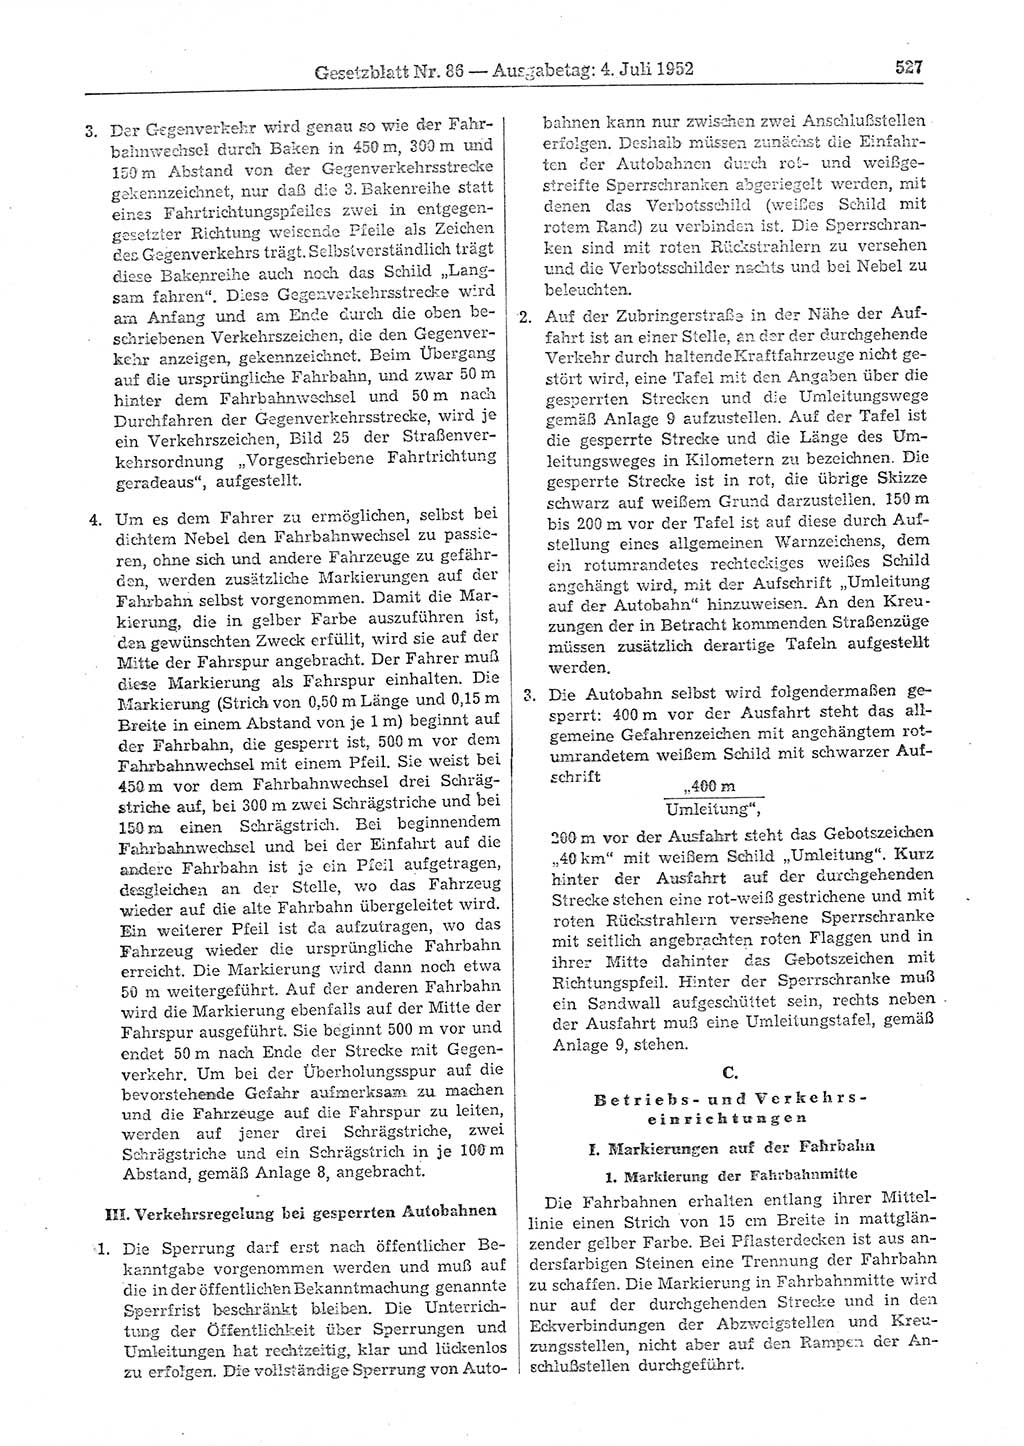 Gesetzblatt (GBl.) der Deutschen Demokratischen Republik (DDR) 1952, Seite 527 (GBl. DDR 1952, S. 527)